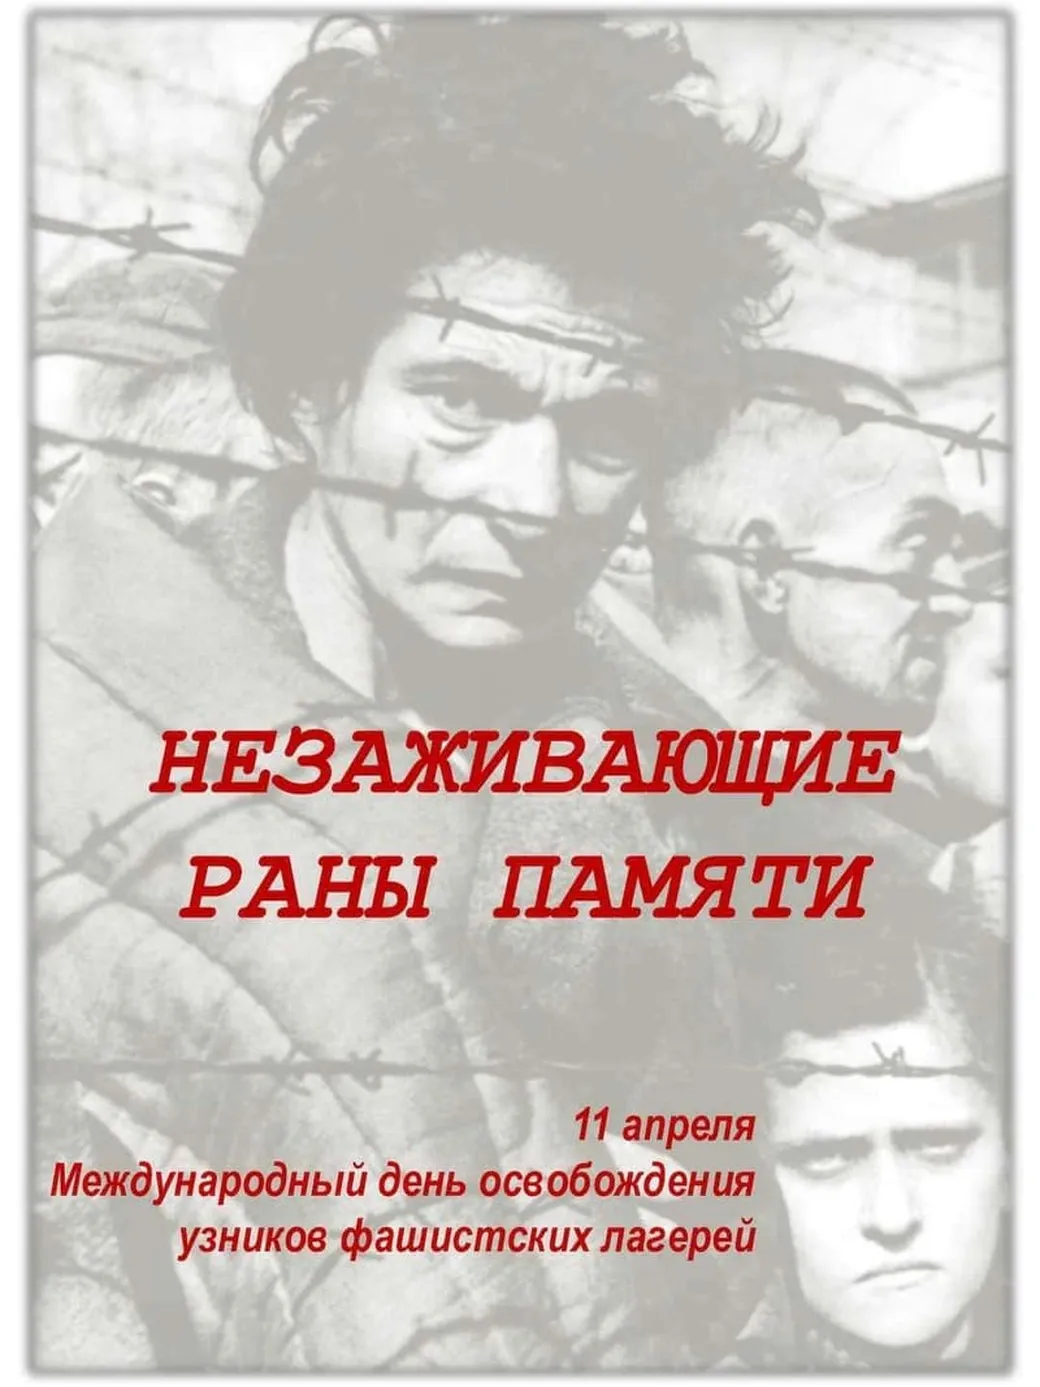 Трогательная открытка с днем освобождения узников фашистских концлагерей